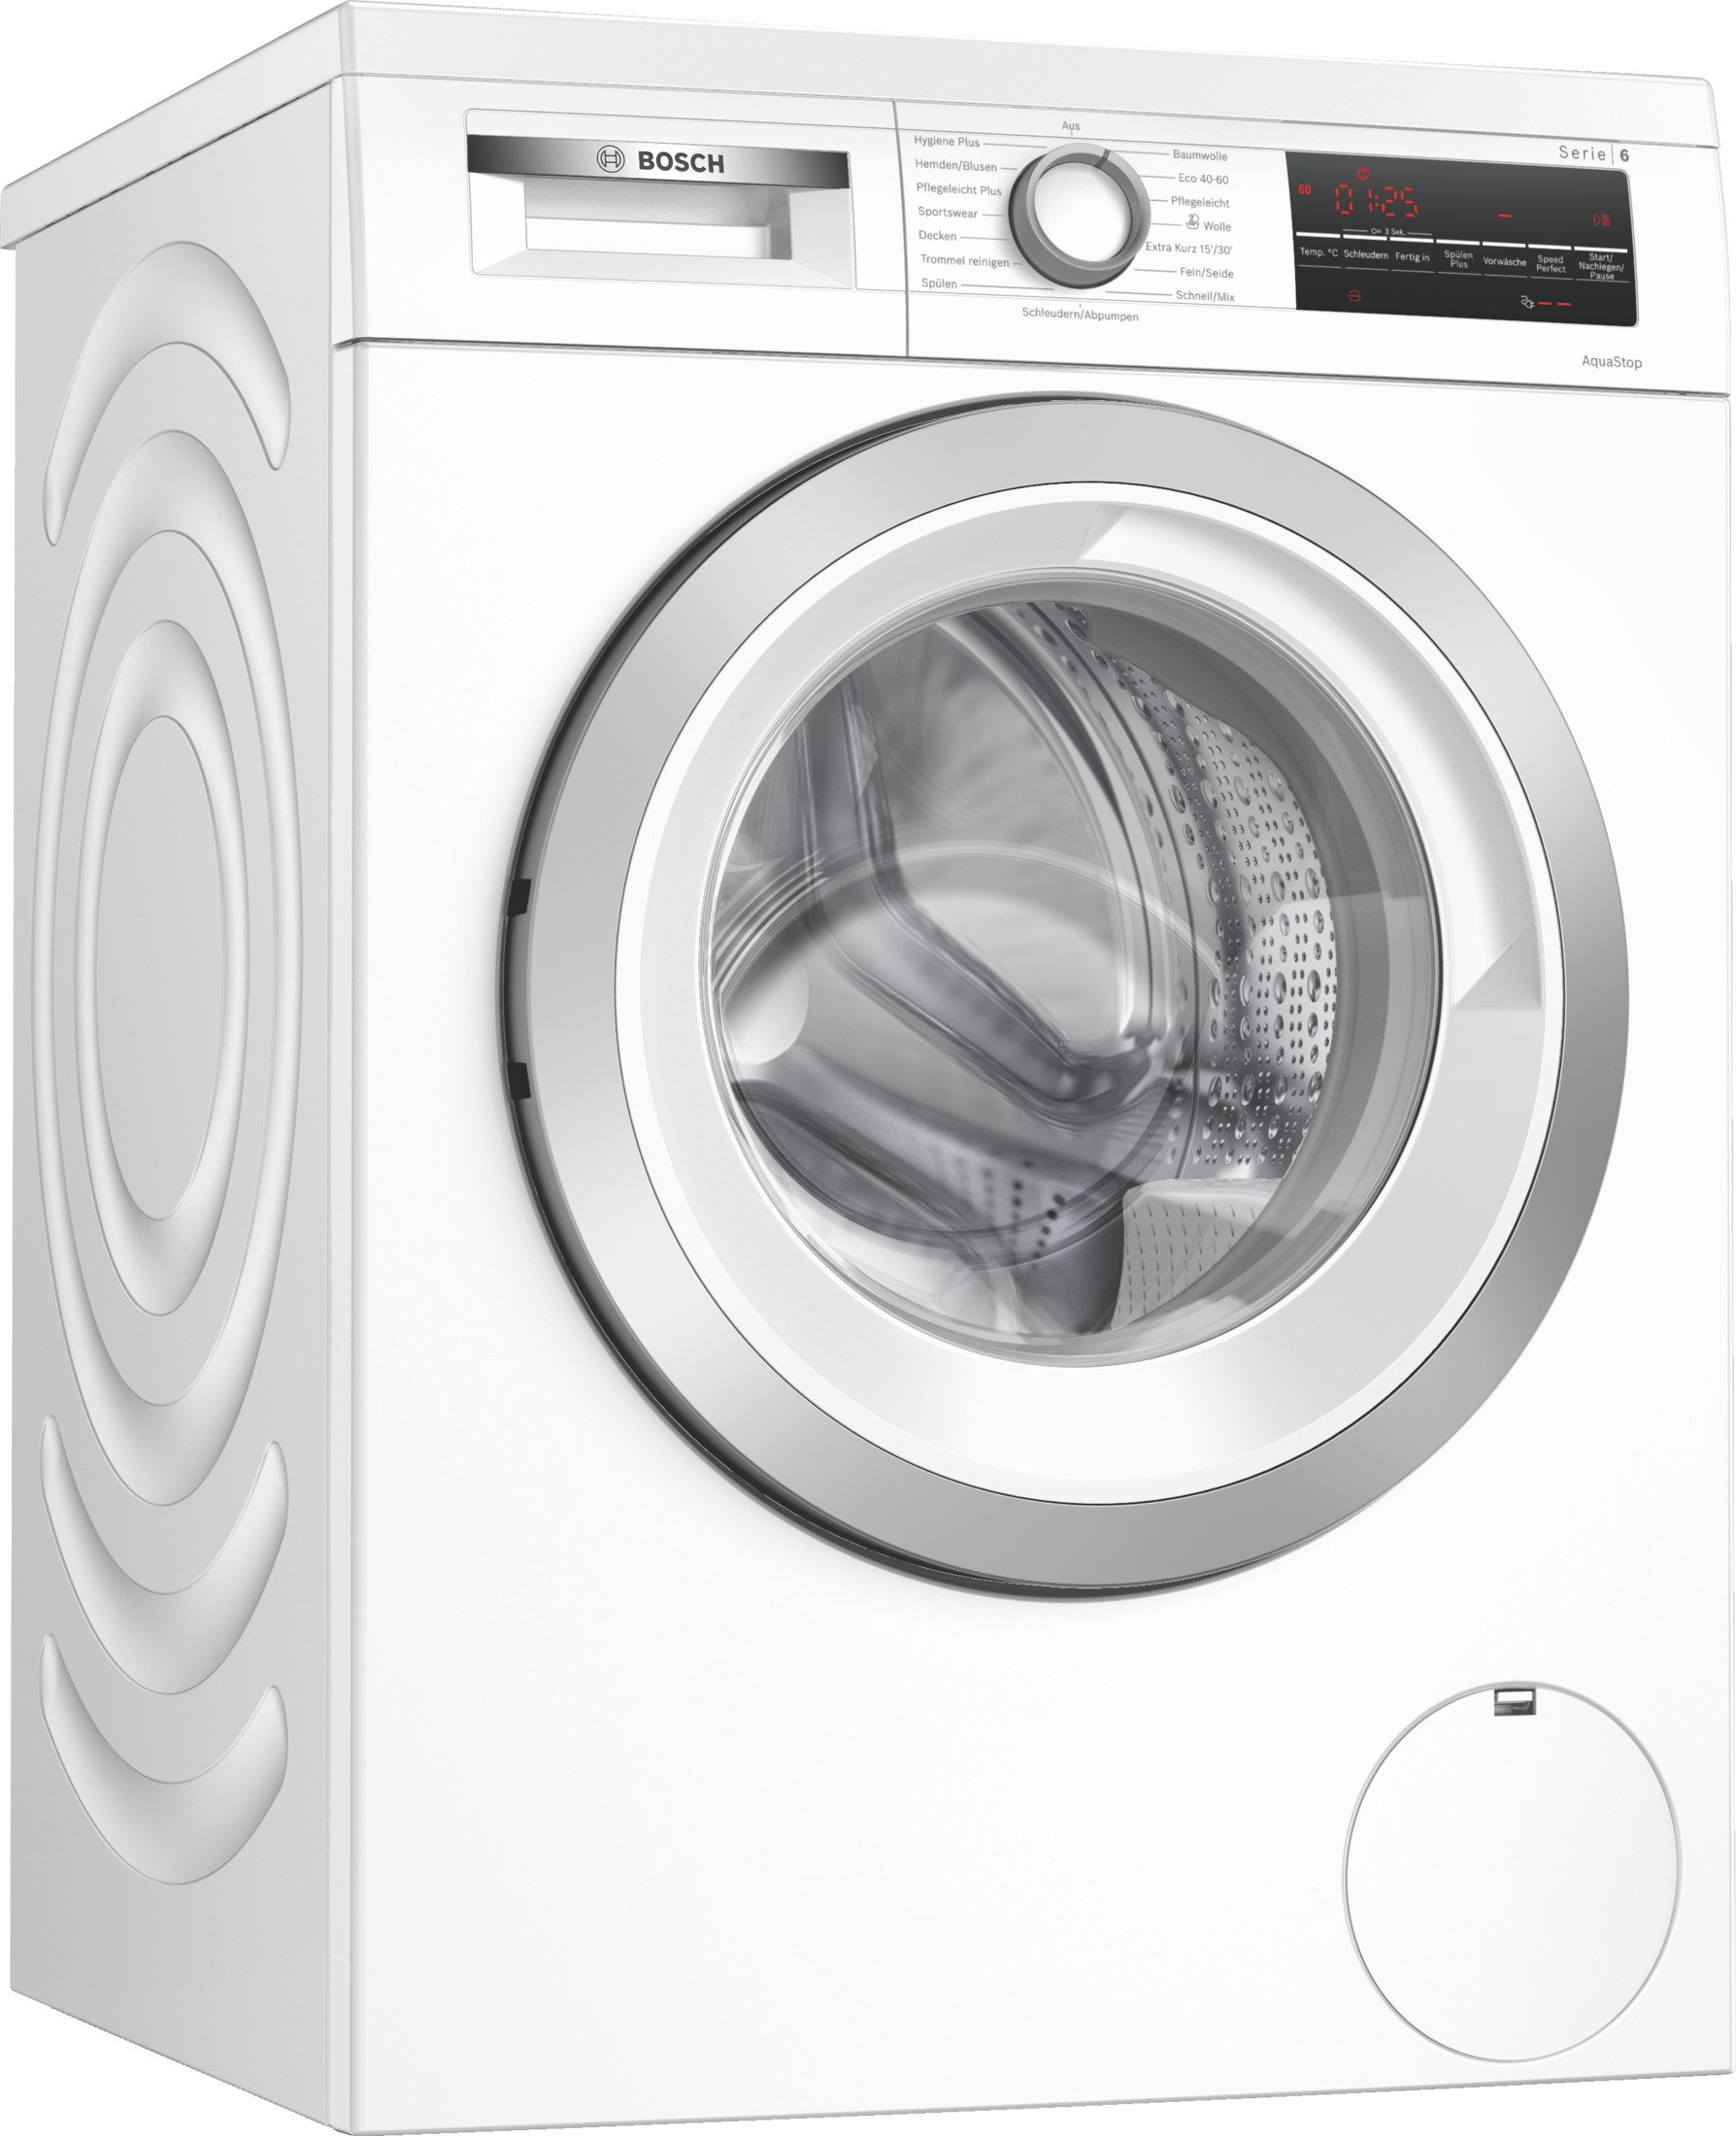 BOSCH Waschmaschine WUU 1400 U/Min., TA 28 8 kg, (8 C)